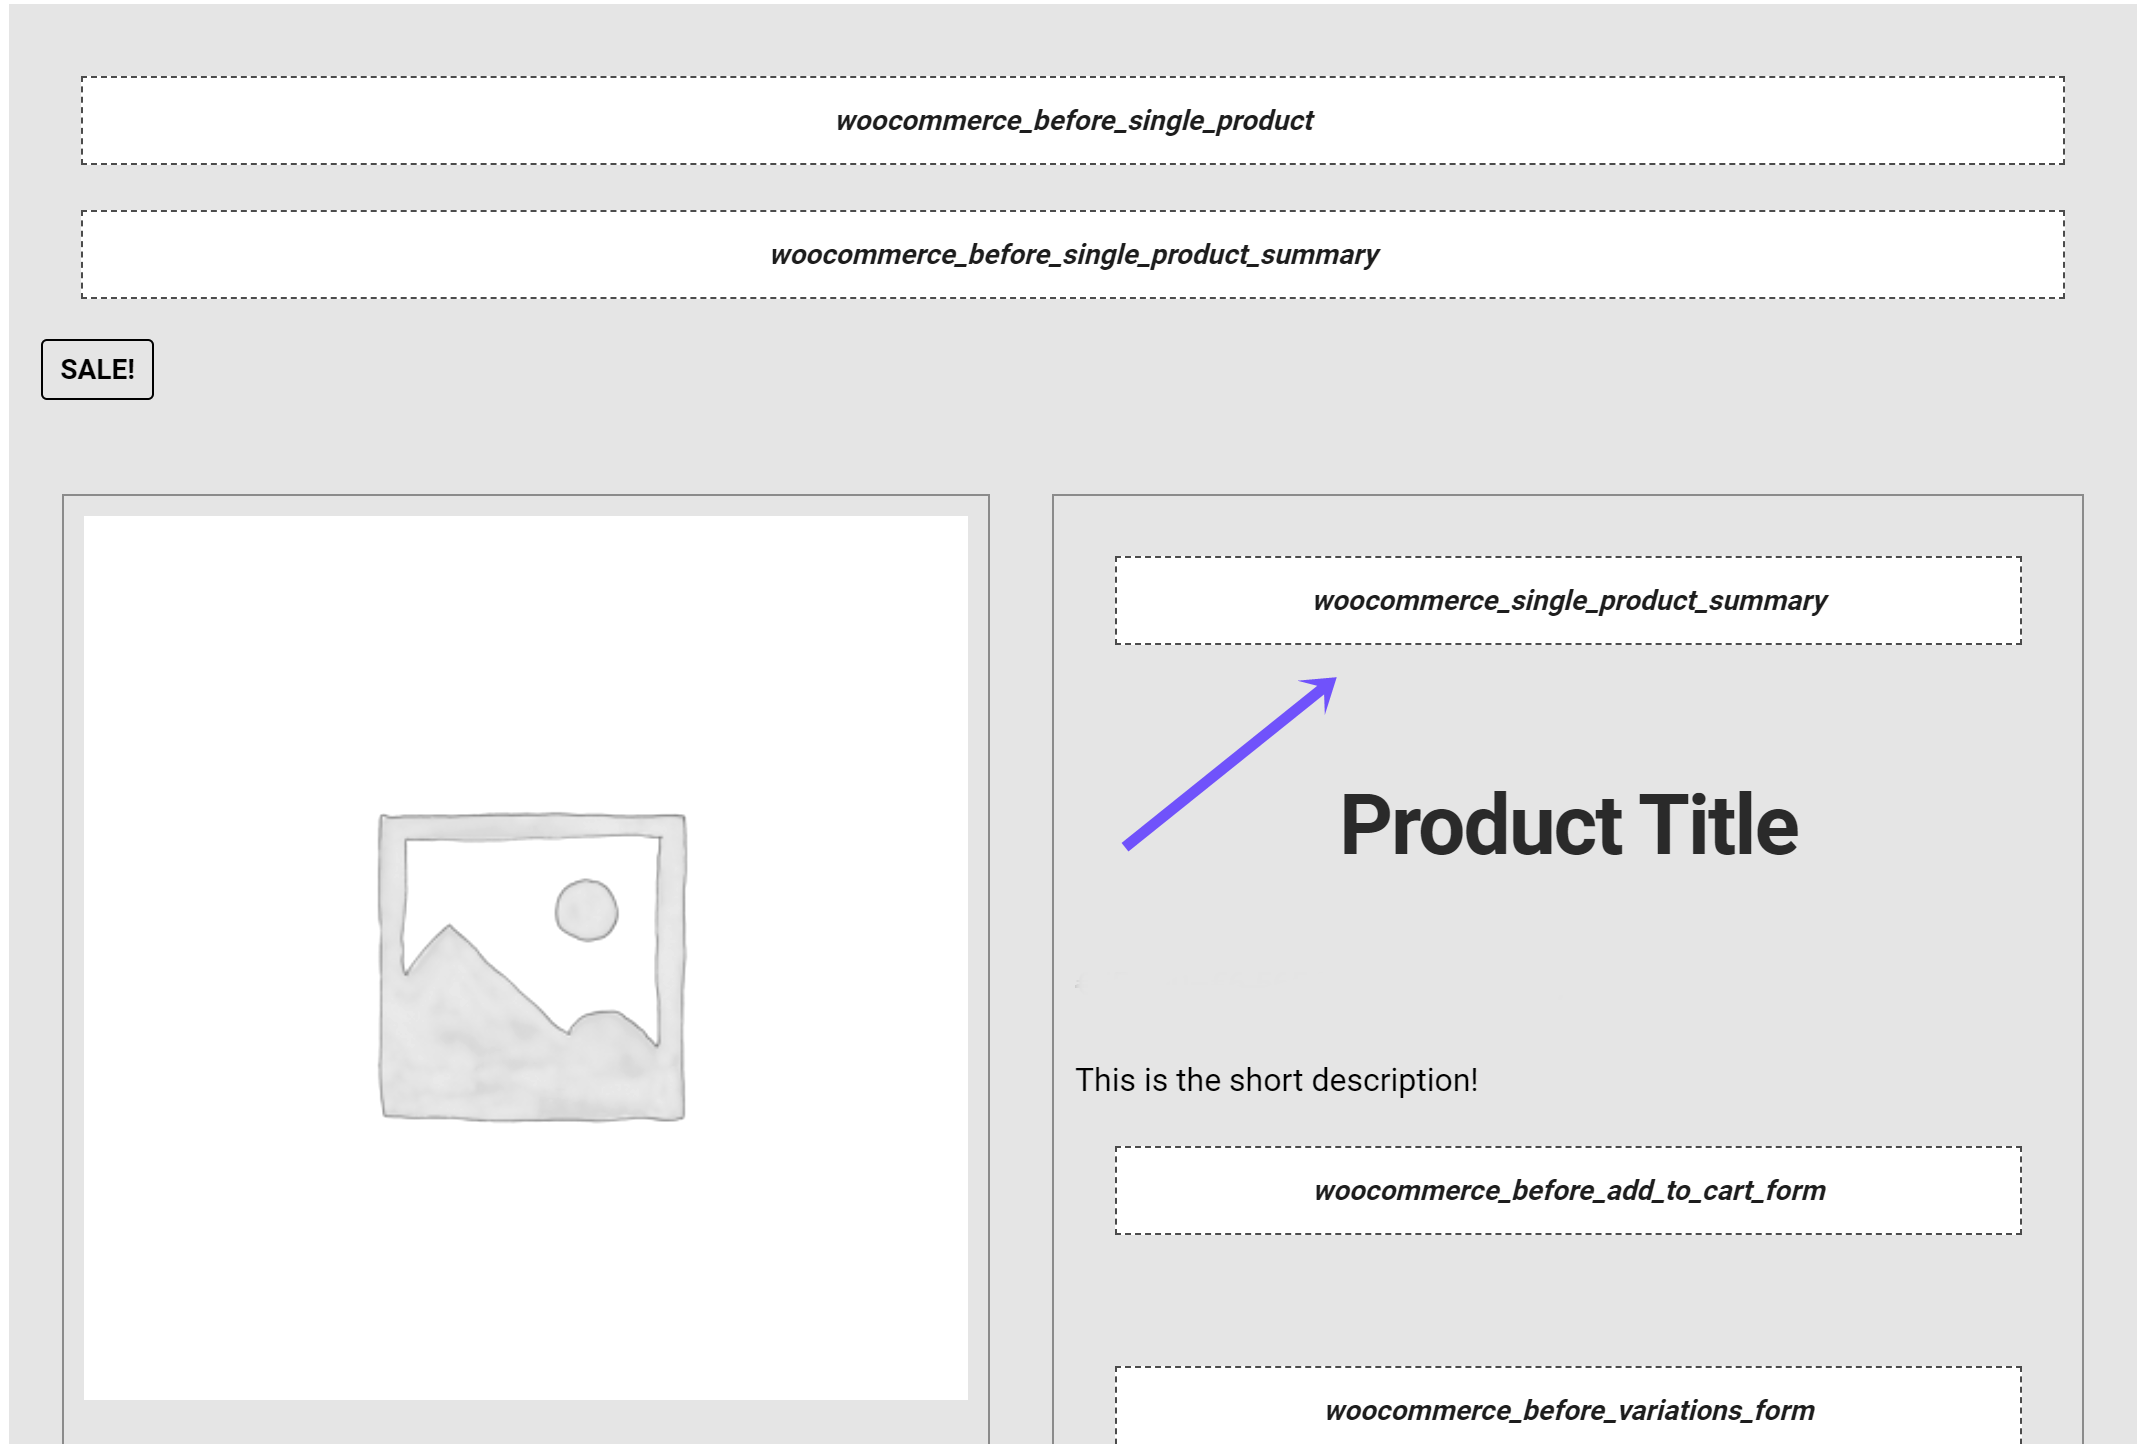 woocommerce_single_product_summary - WooCommerce Hook